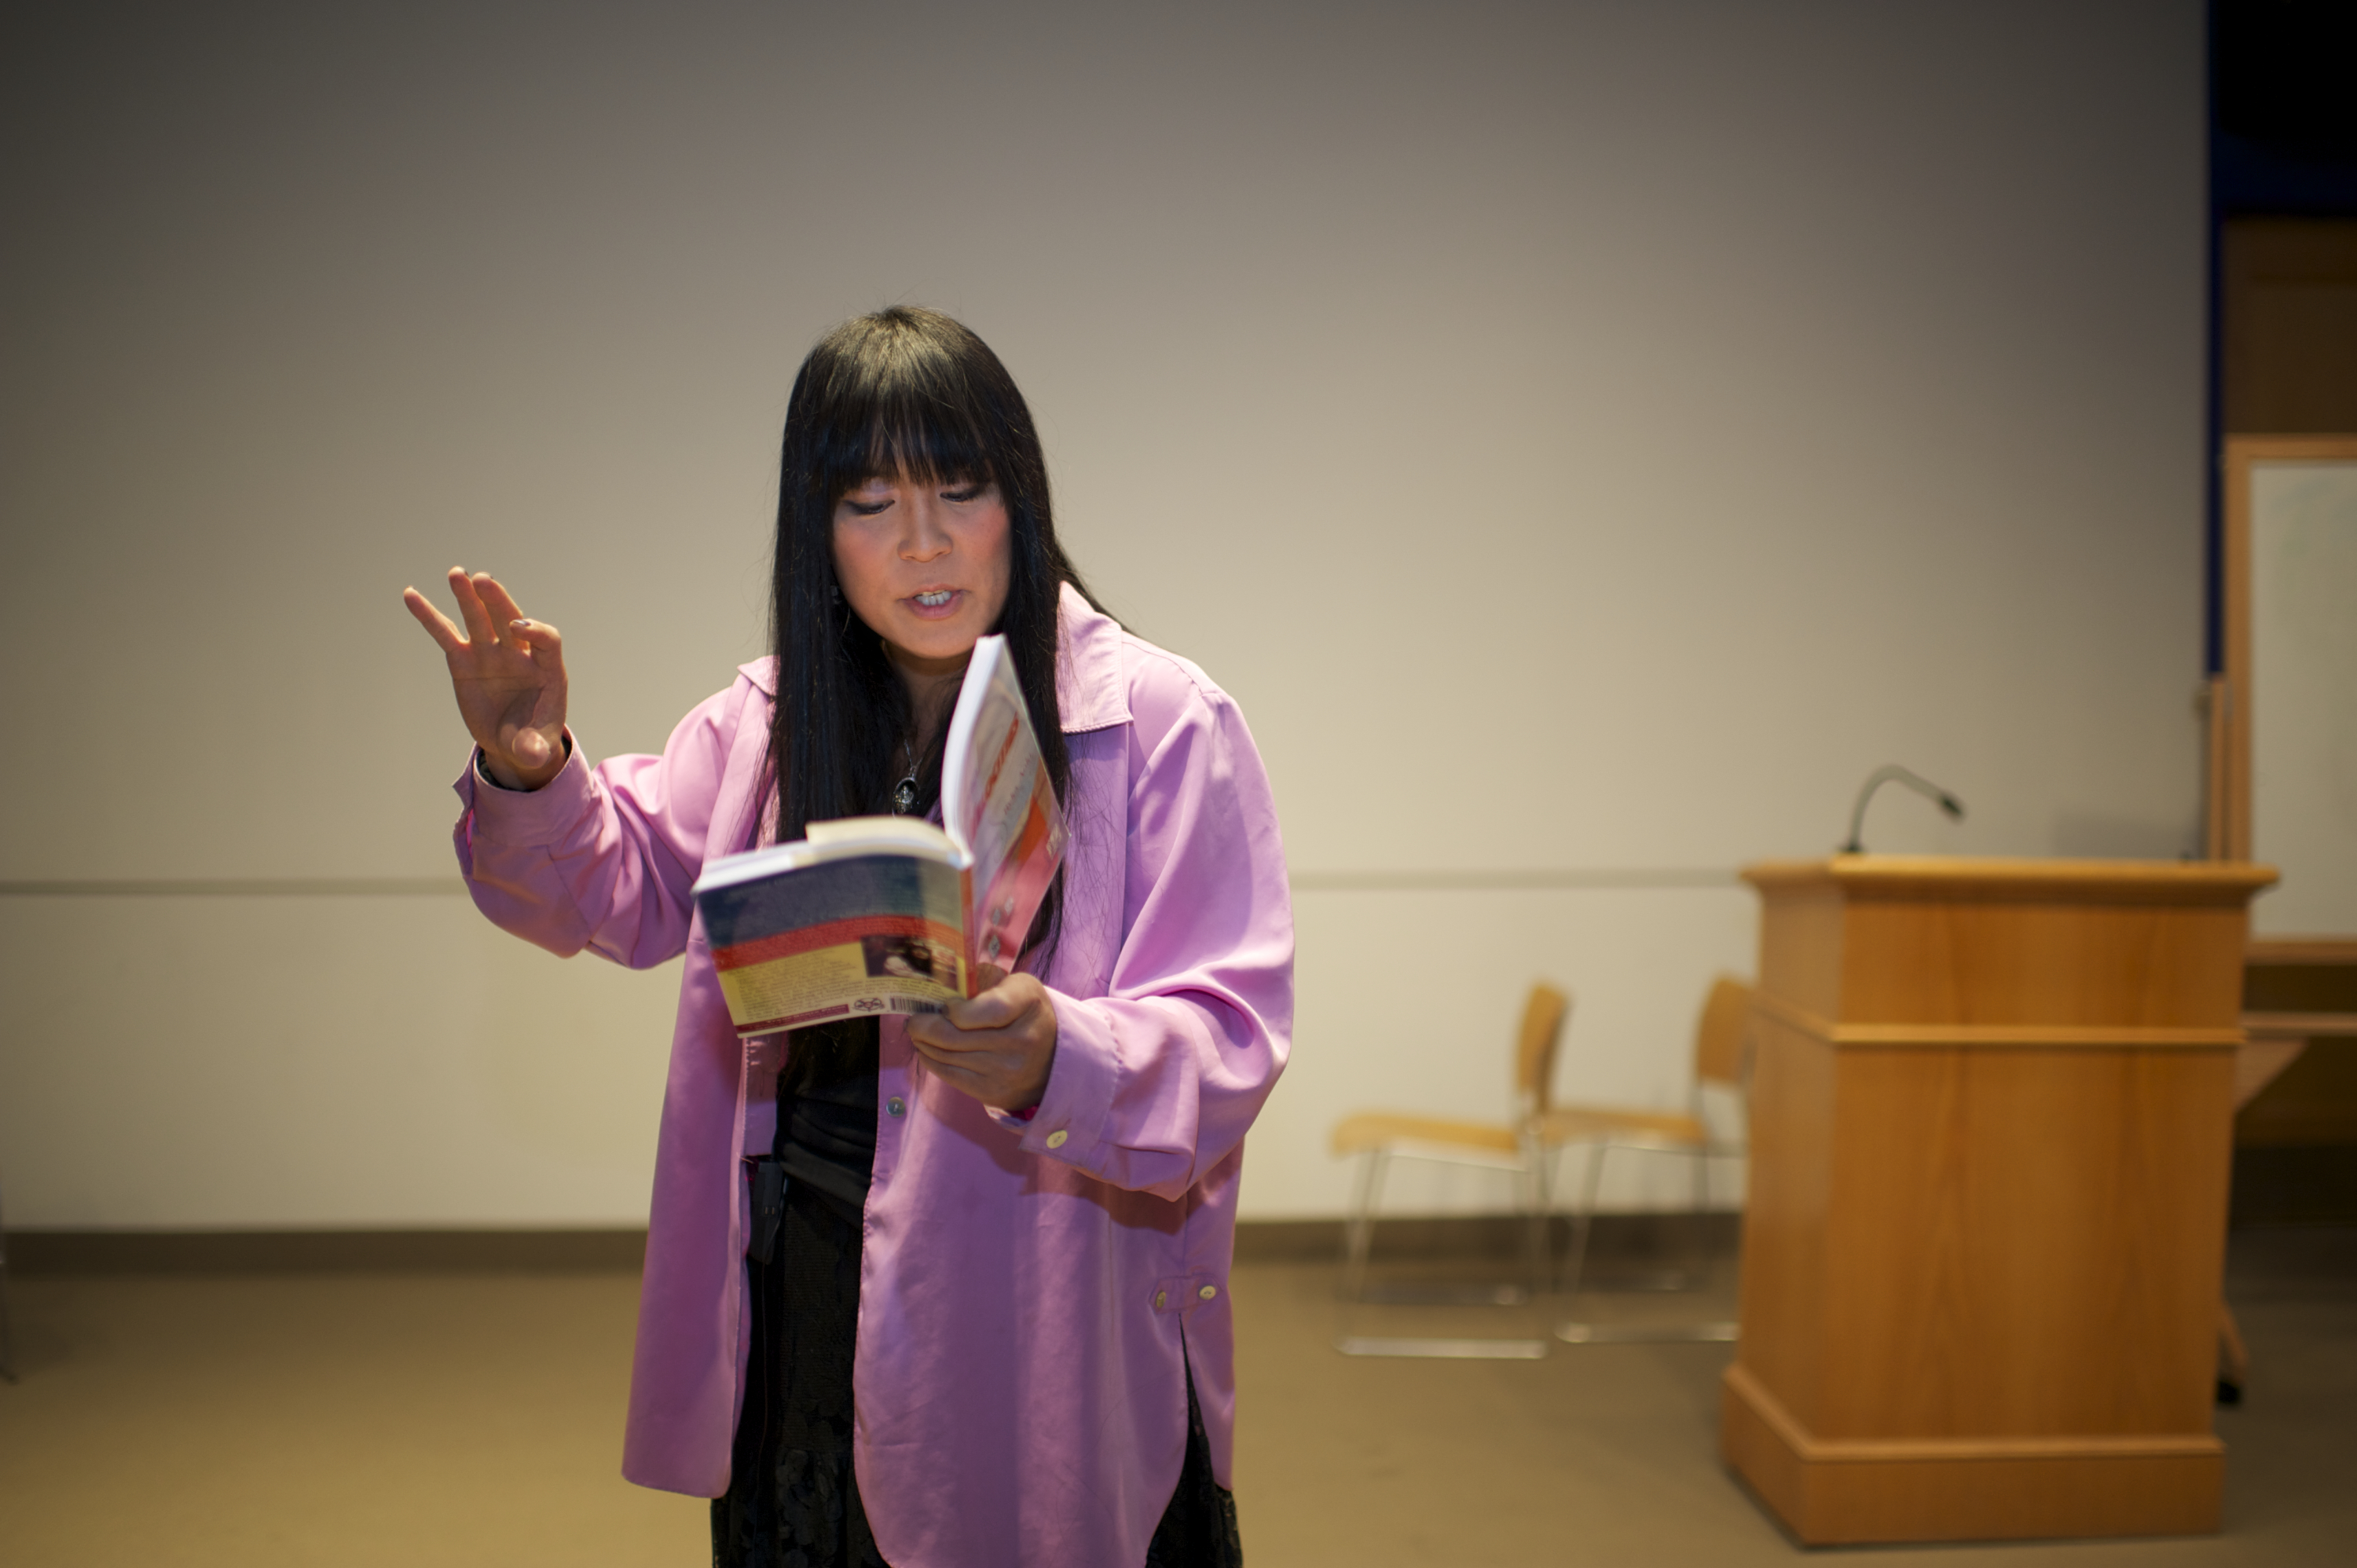 Author Ryka Aoki reading her work